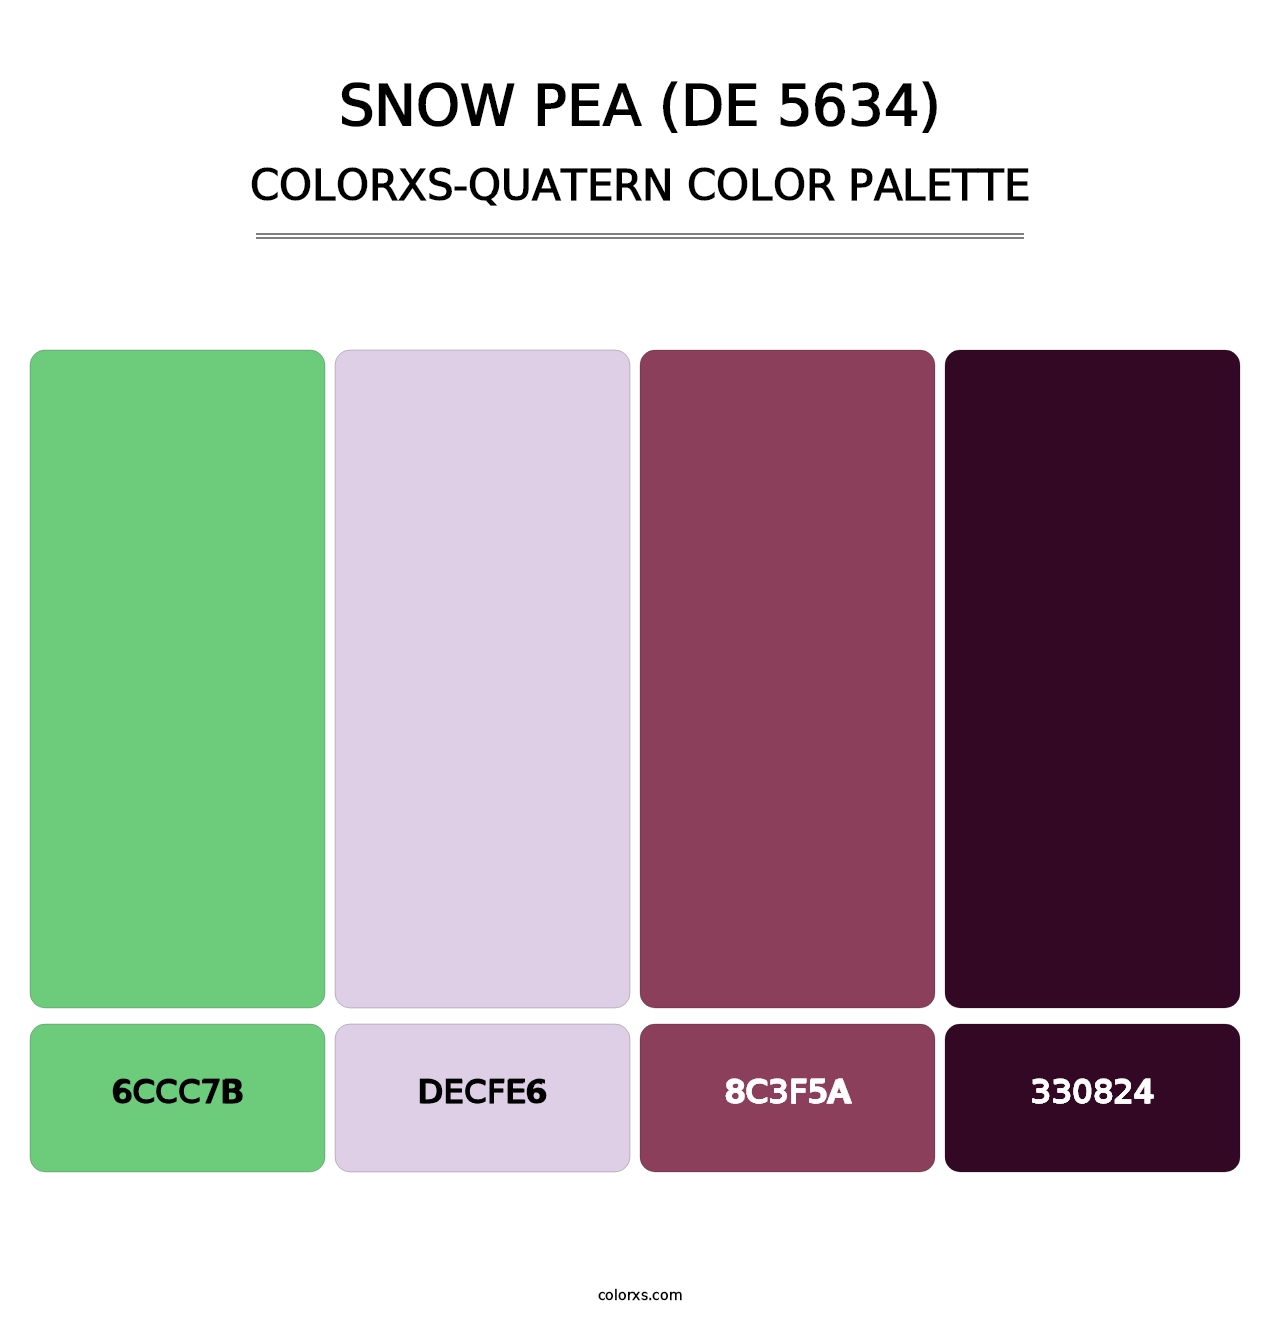 Snow Pea (DE 5634) - Colorxs Quatern Palette